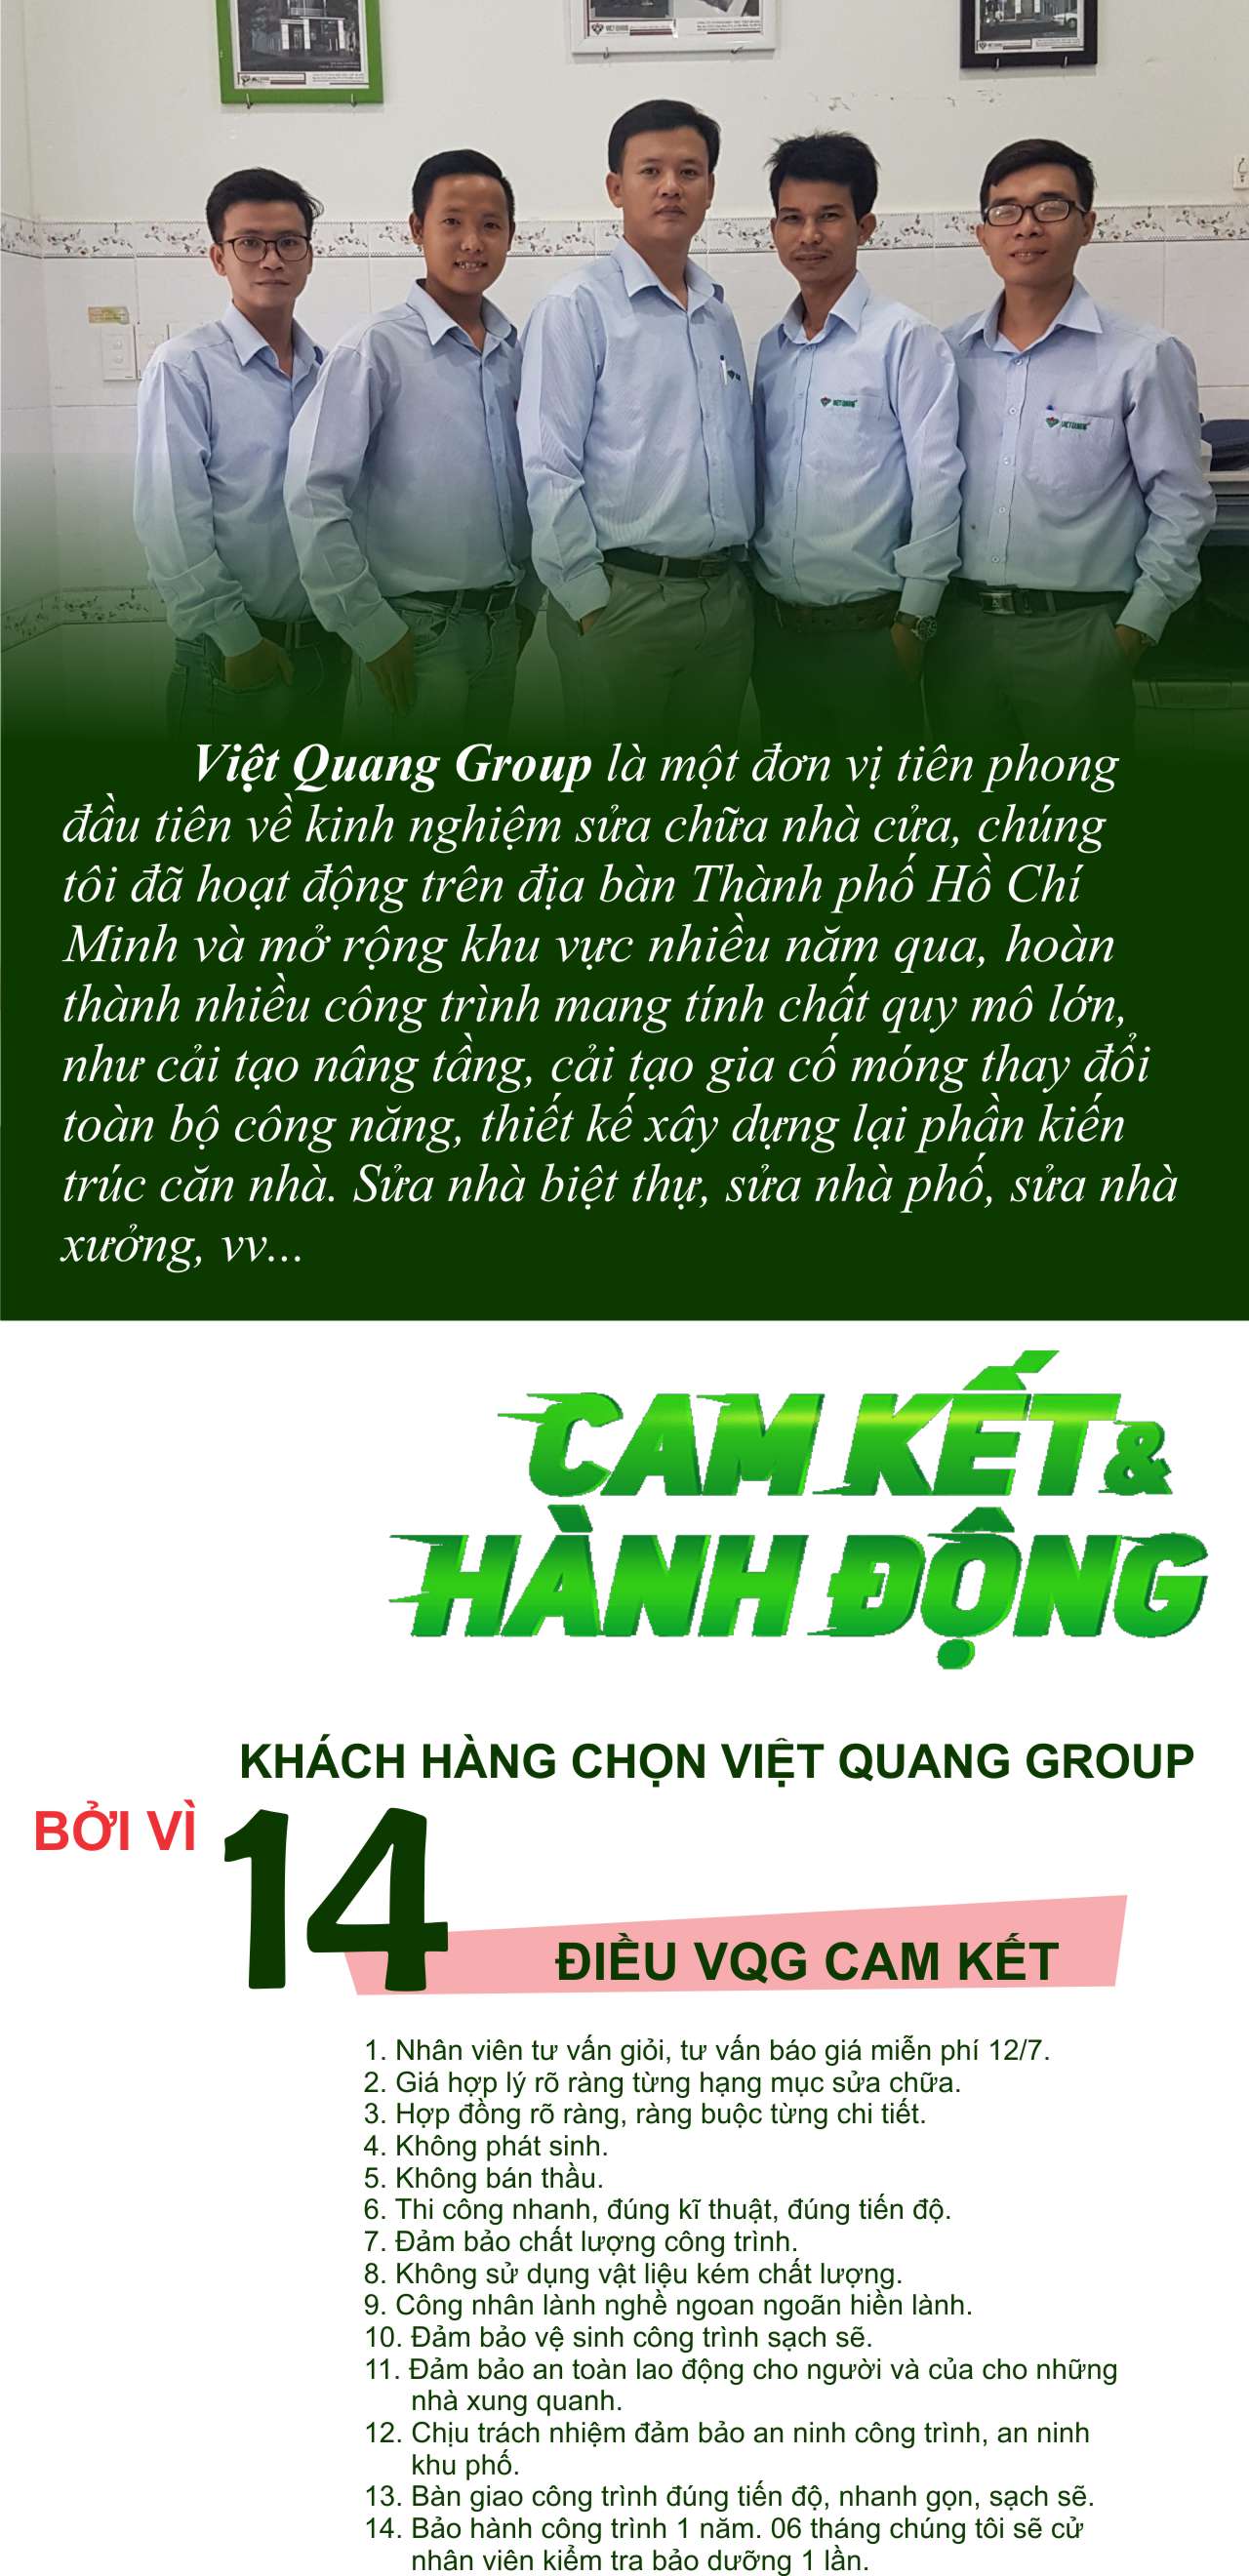 Cam kết của Việt Quang khi sửa nhà quận Bình Tân